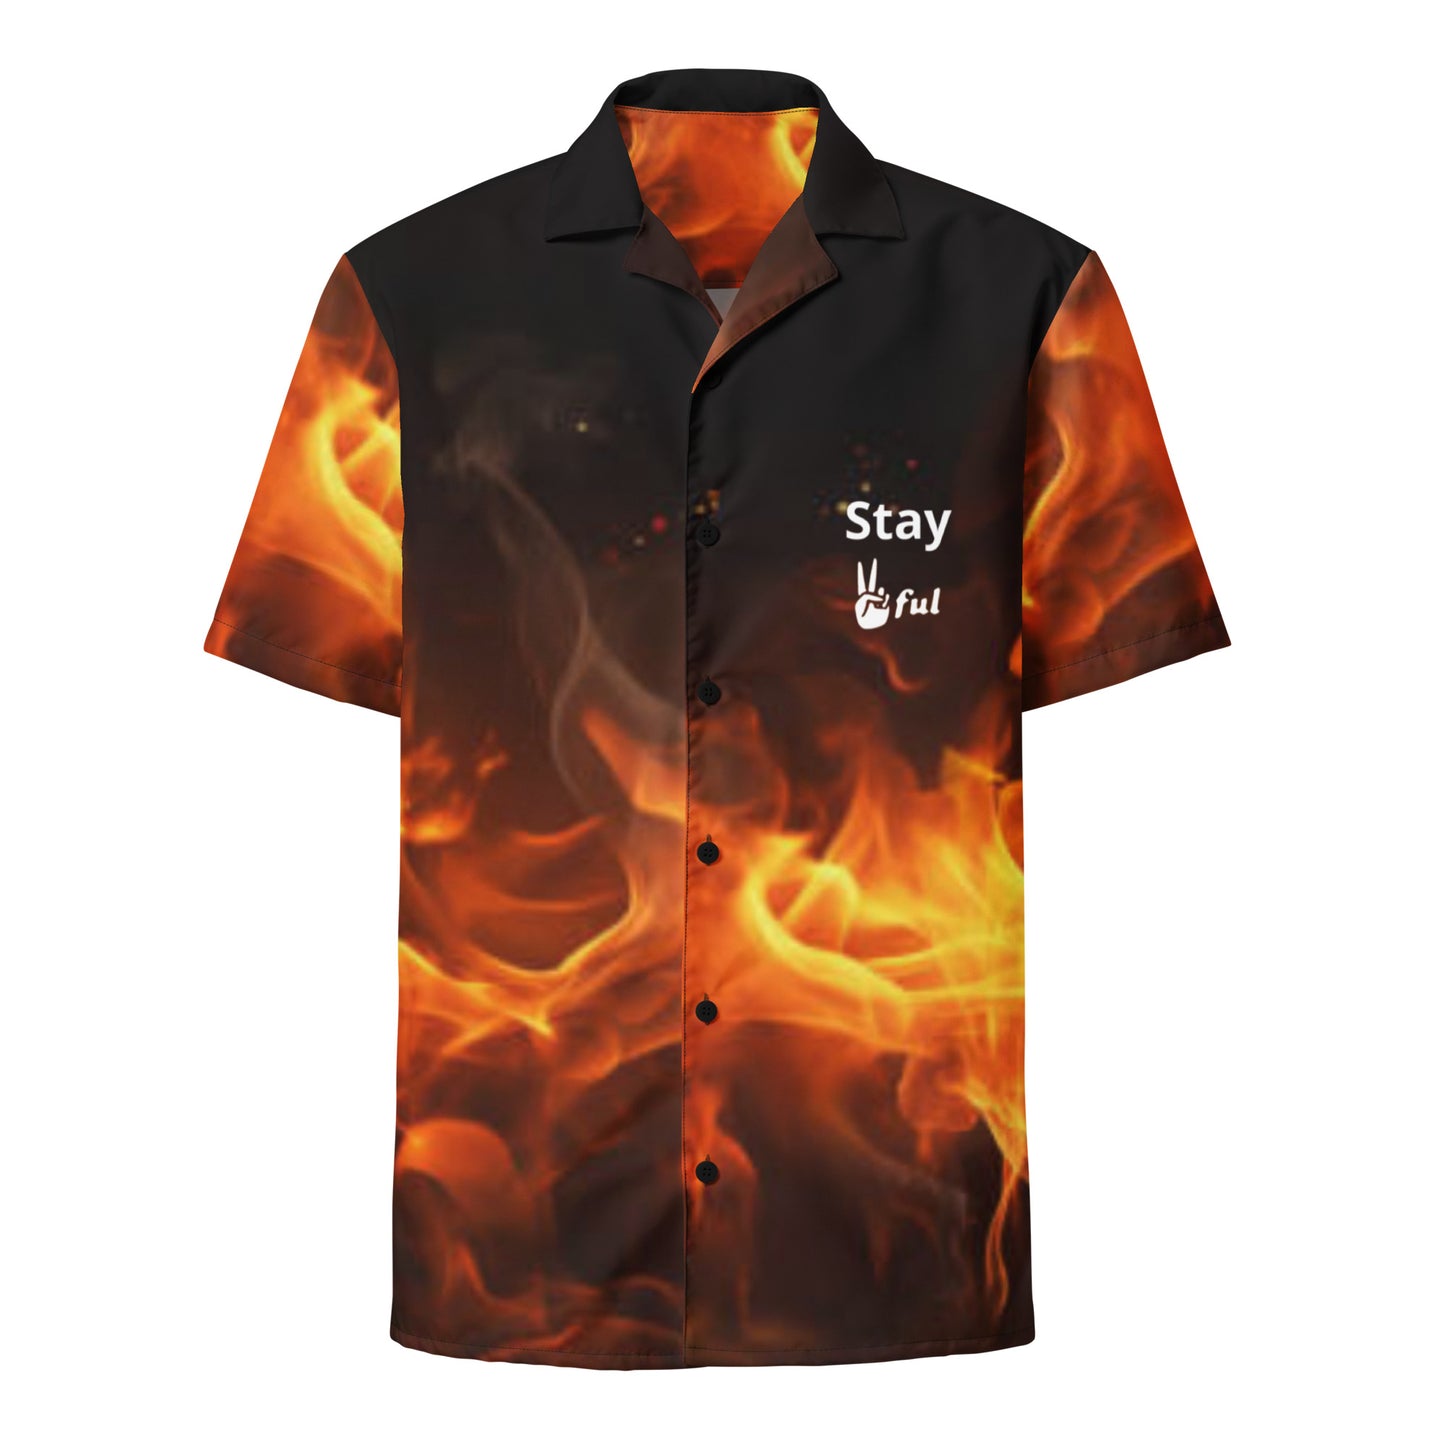 Unisex Peaceful Fire button shirt